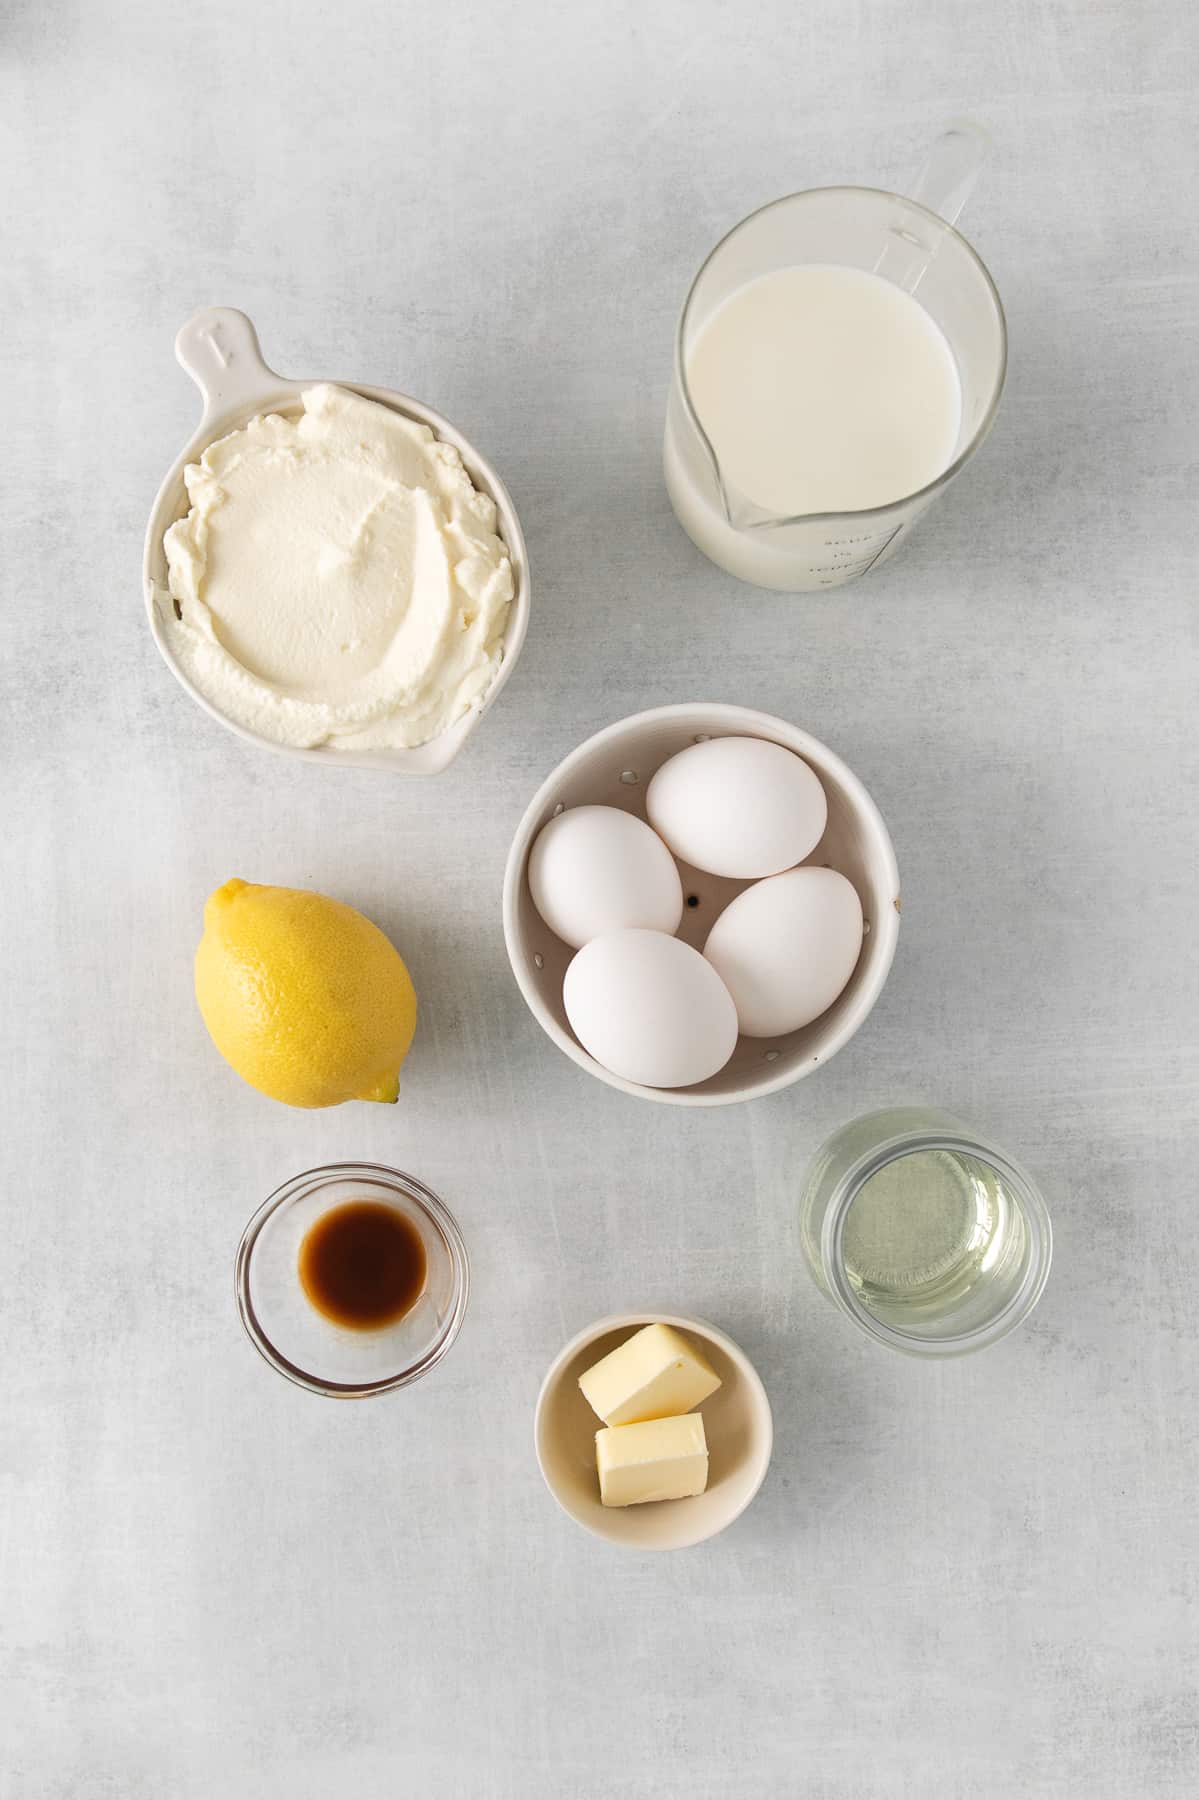 Ingredients for lemon ricotta pancakes.